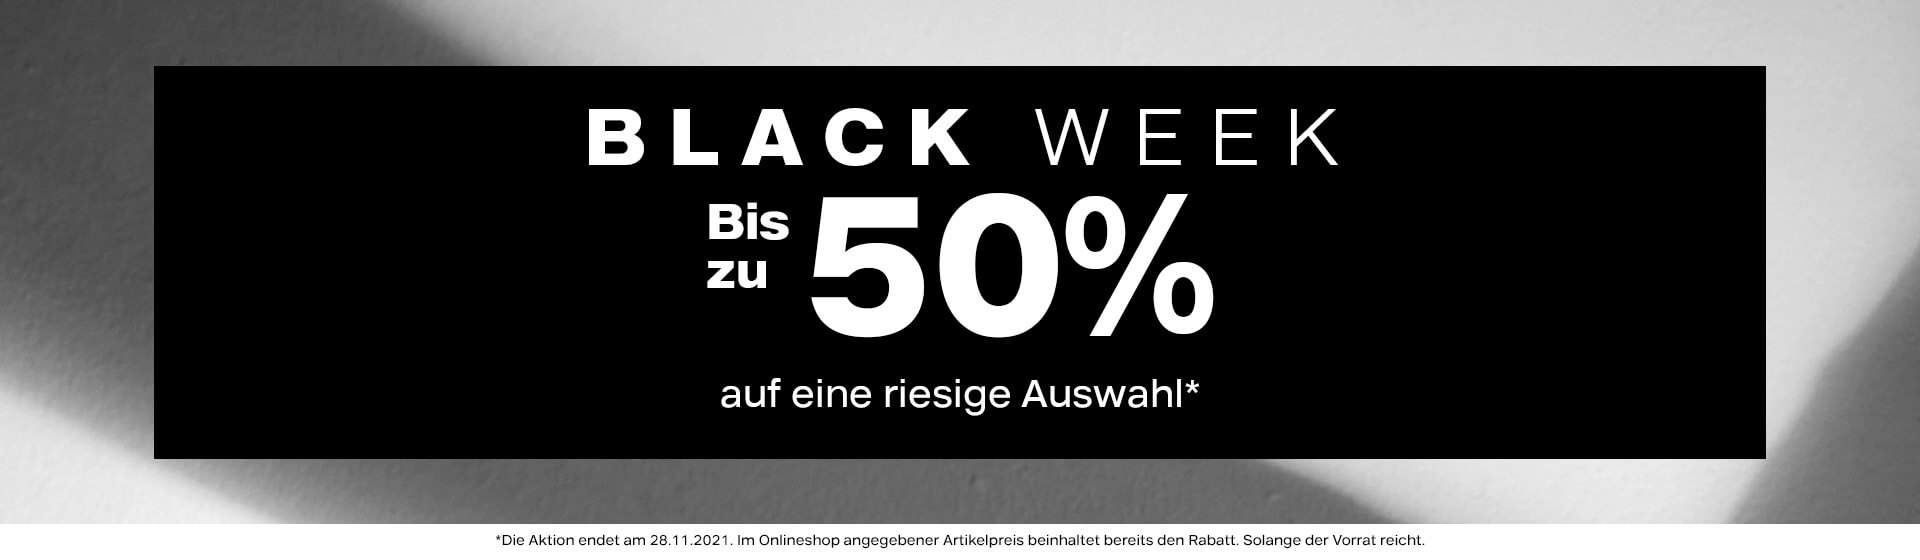 Black Week bei Deichmann